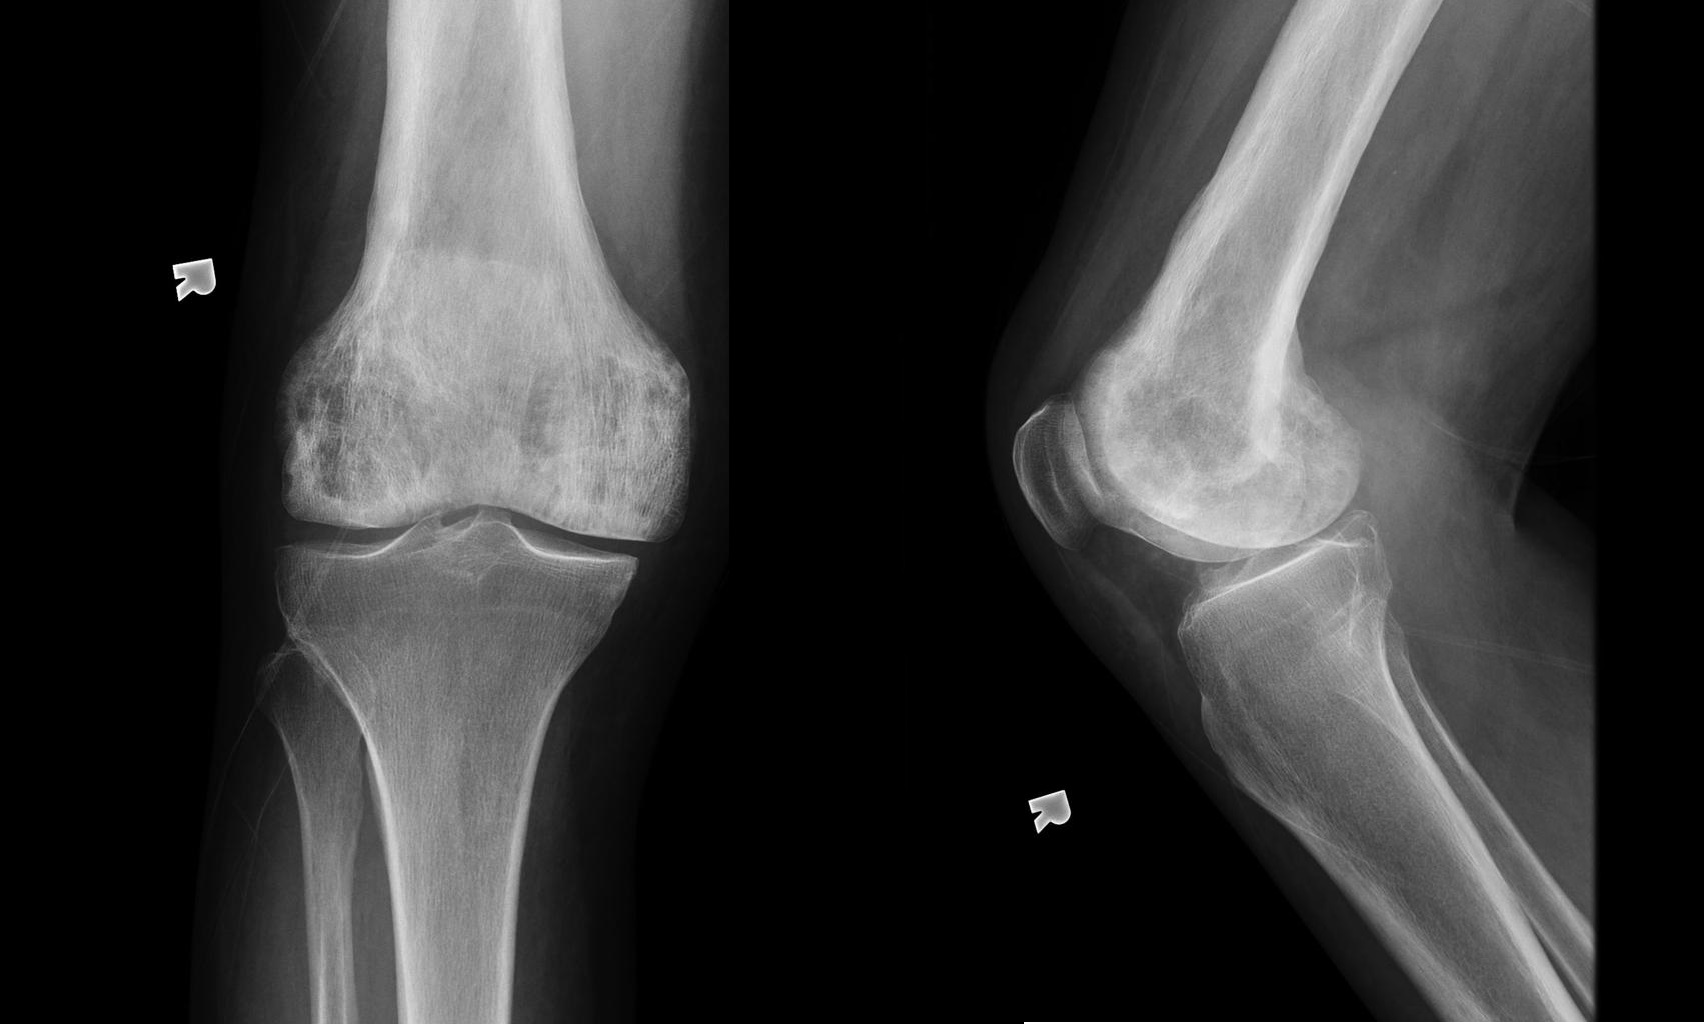 File:Paget-disease-of-the-knee.jpg